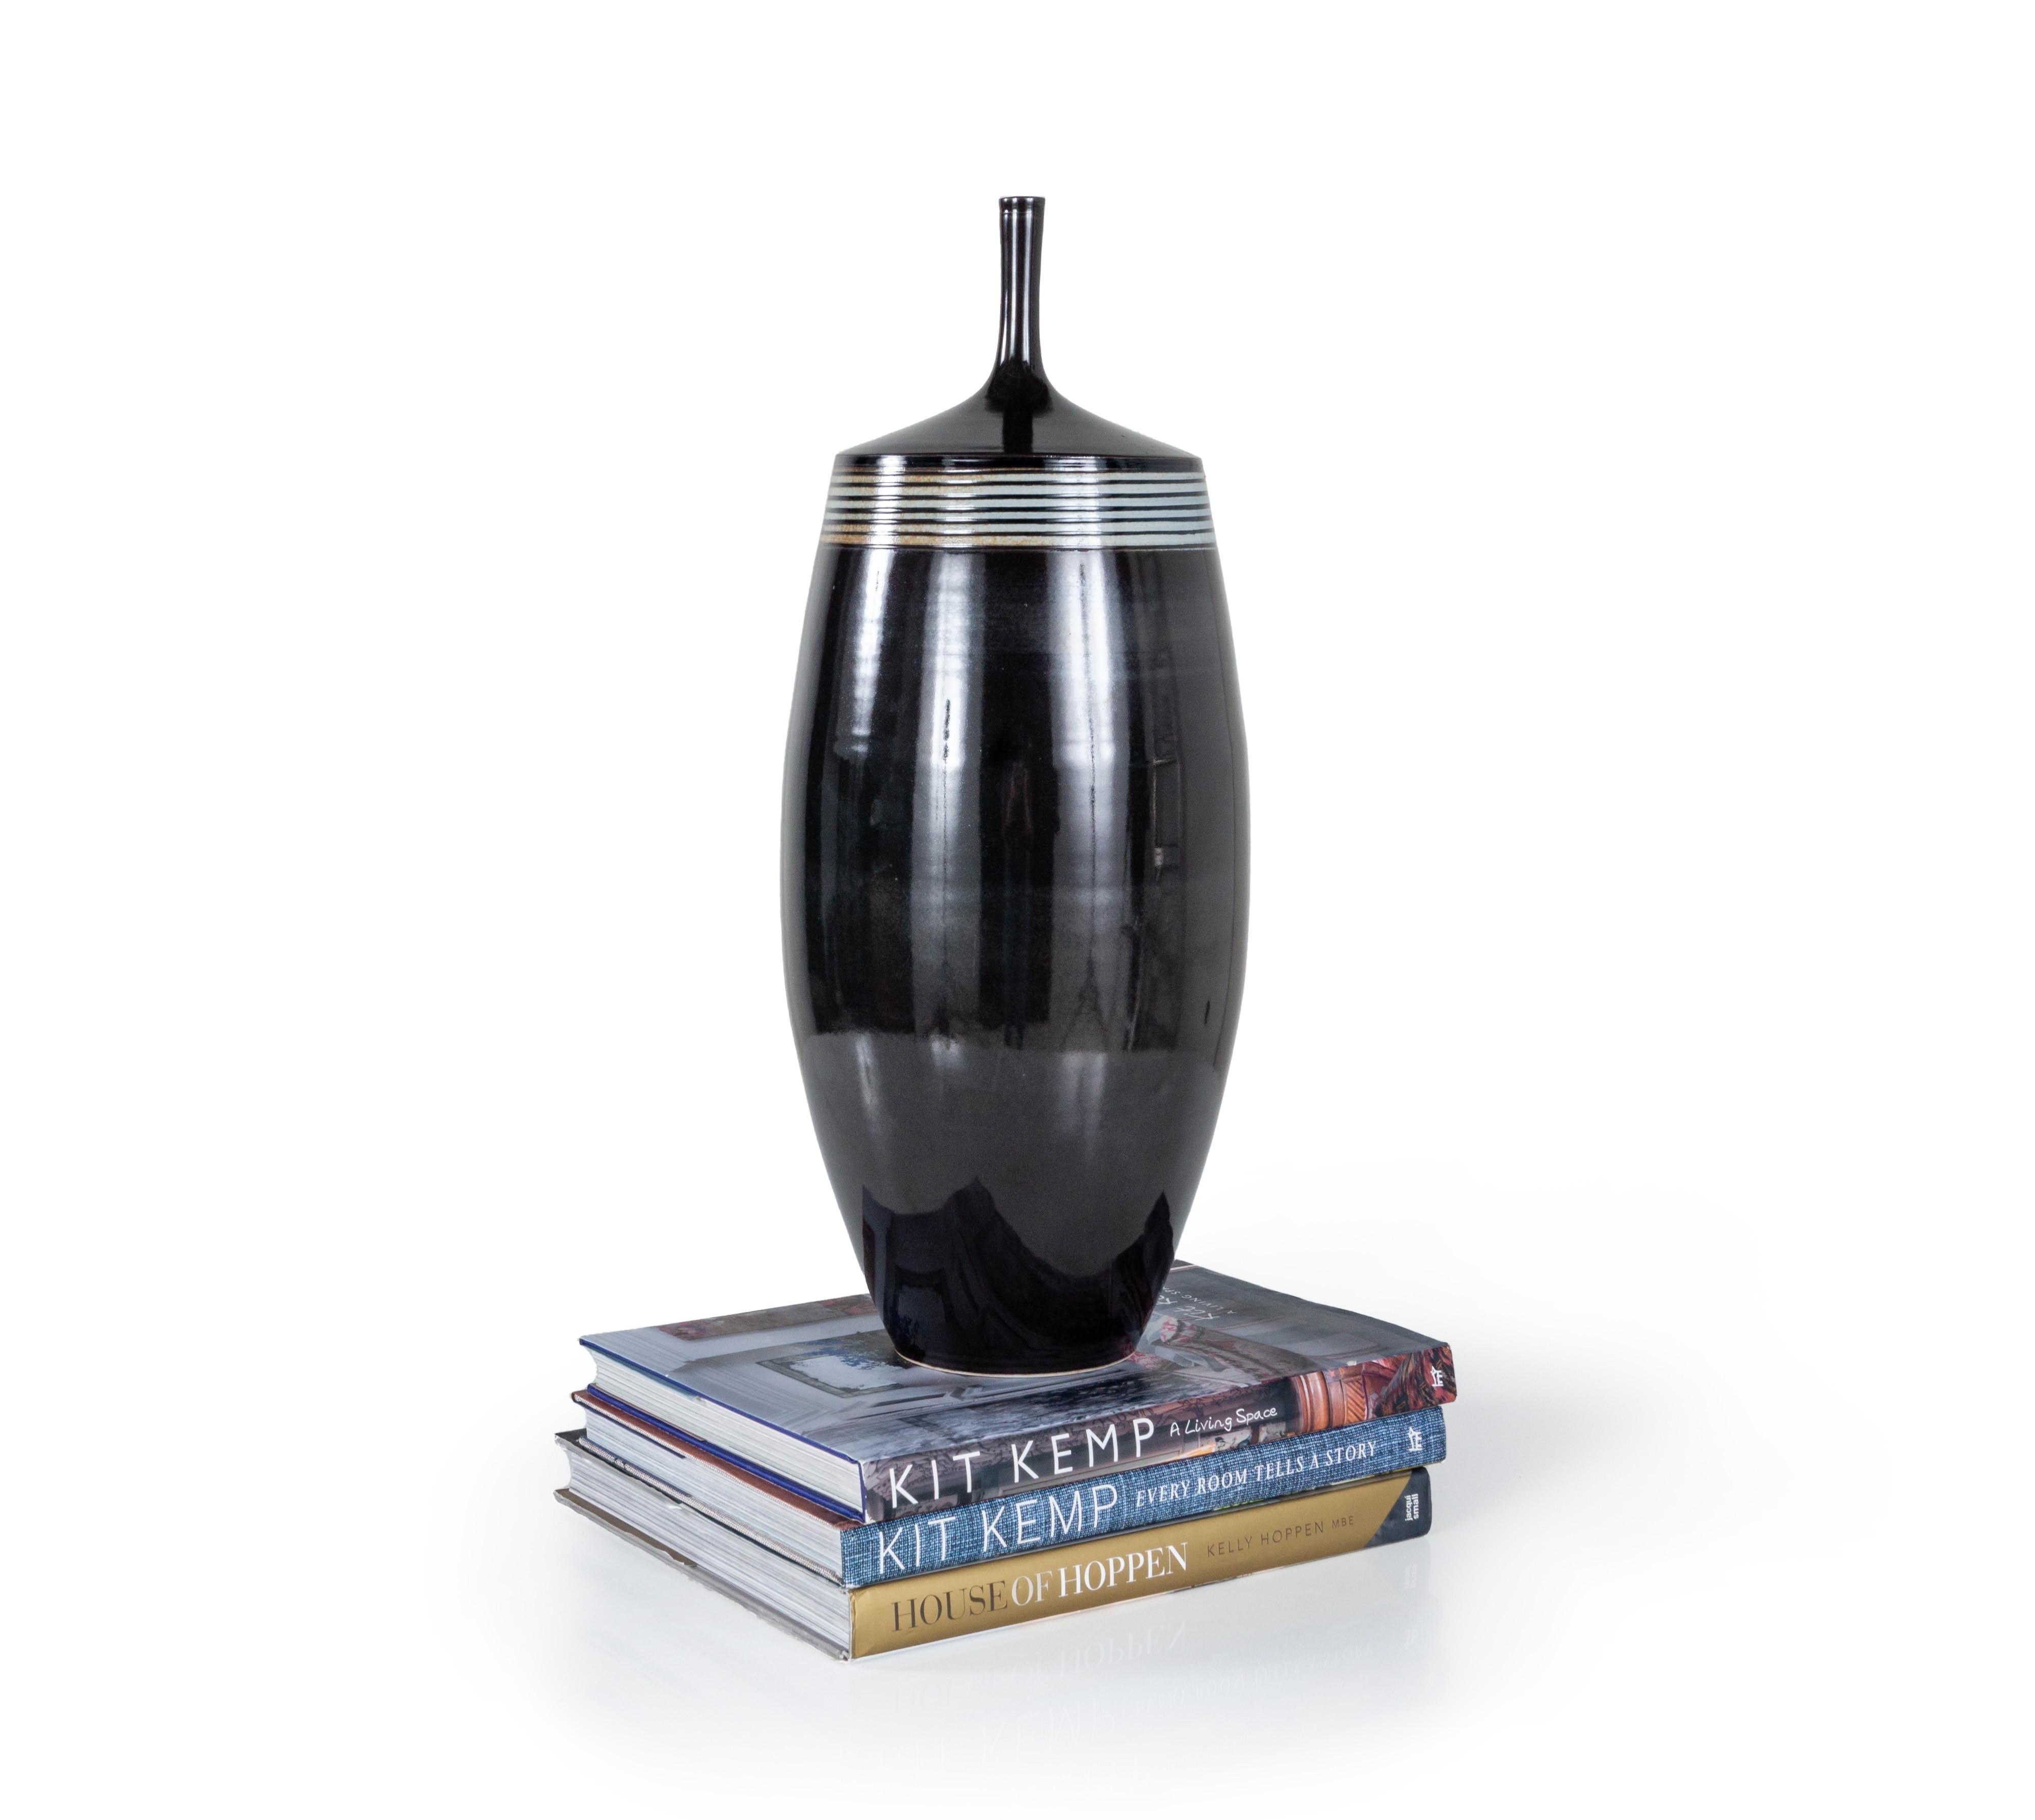 Le vase Vintage Stephen Merritt est une magnifique jarre et une pièce de poterie de l'artiste contemporain acclamé, Stephen Merritt. Le récipient est fabriqué en terre cuite à haute température et présente une finition polie et émaillée avec un